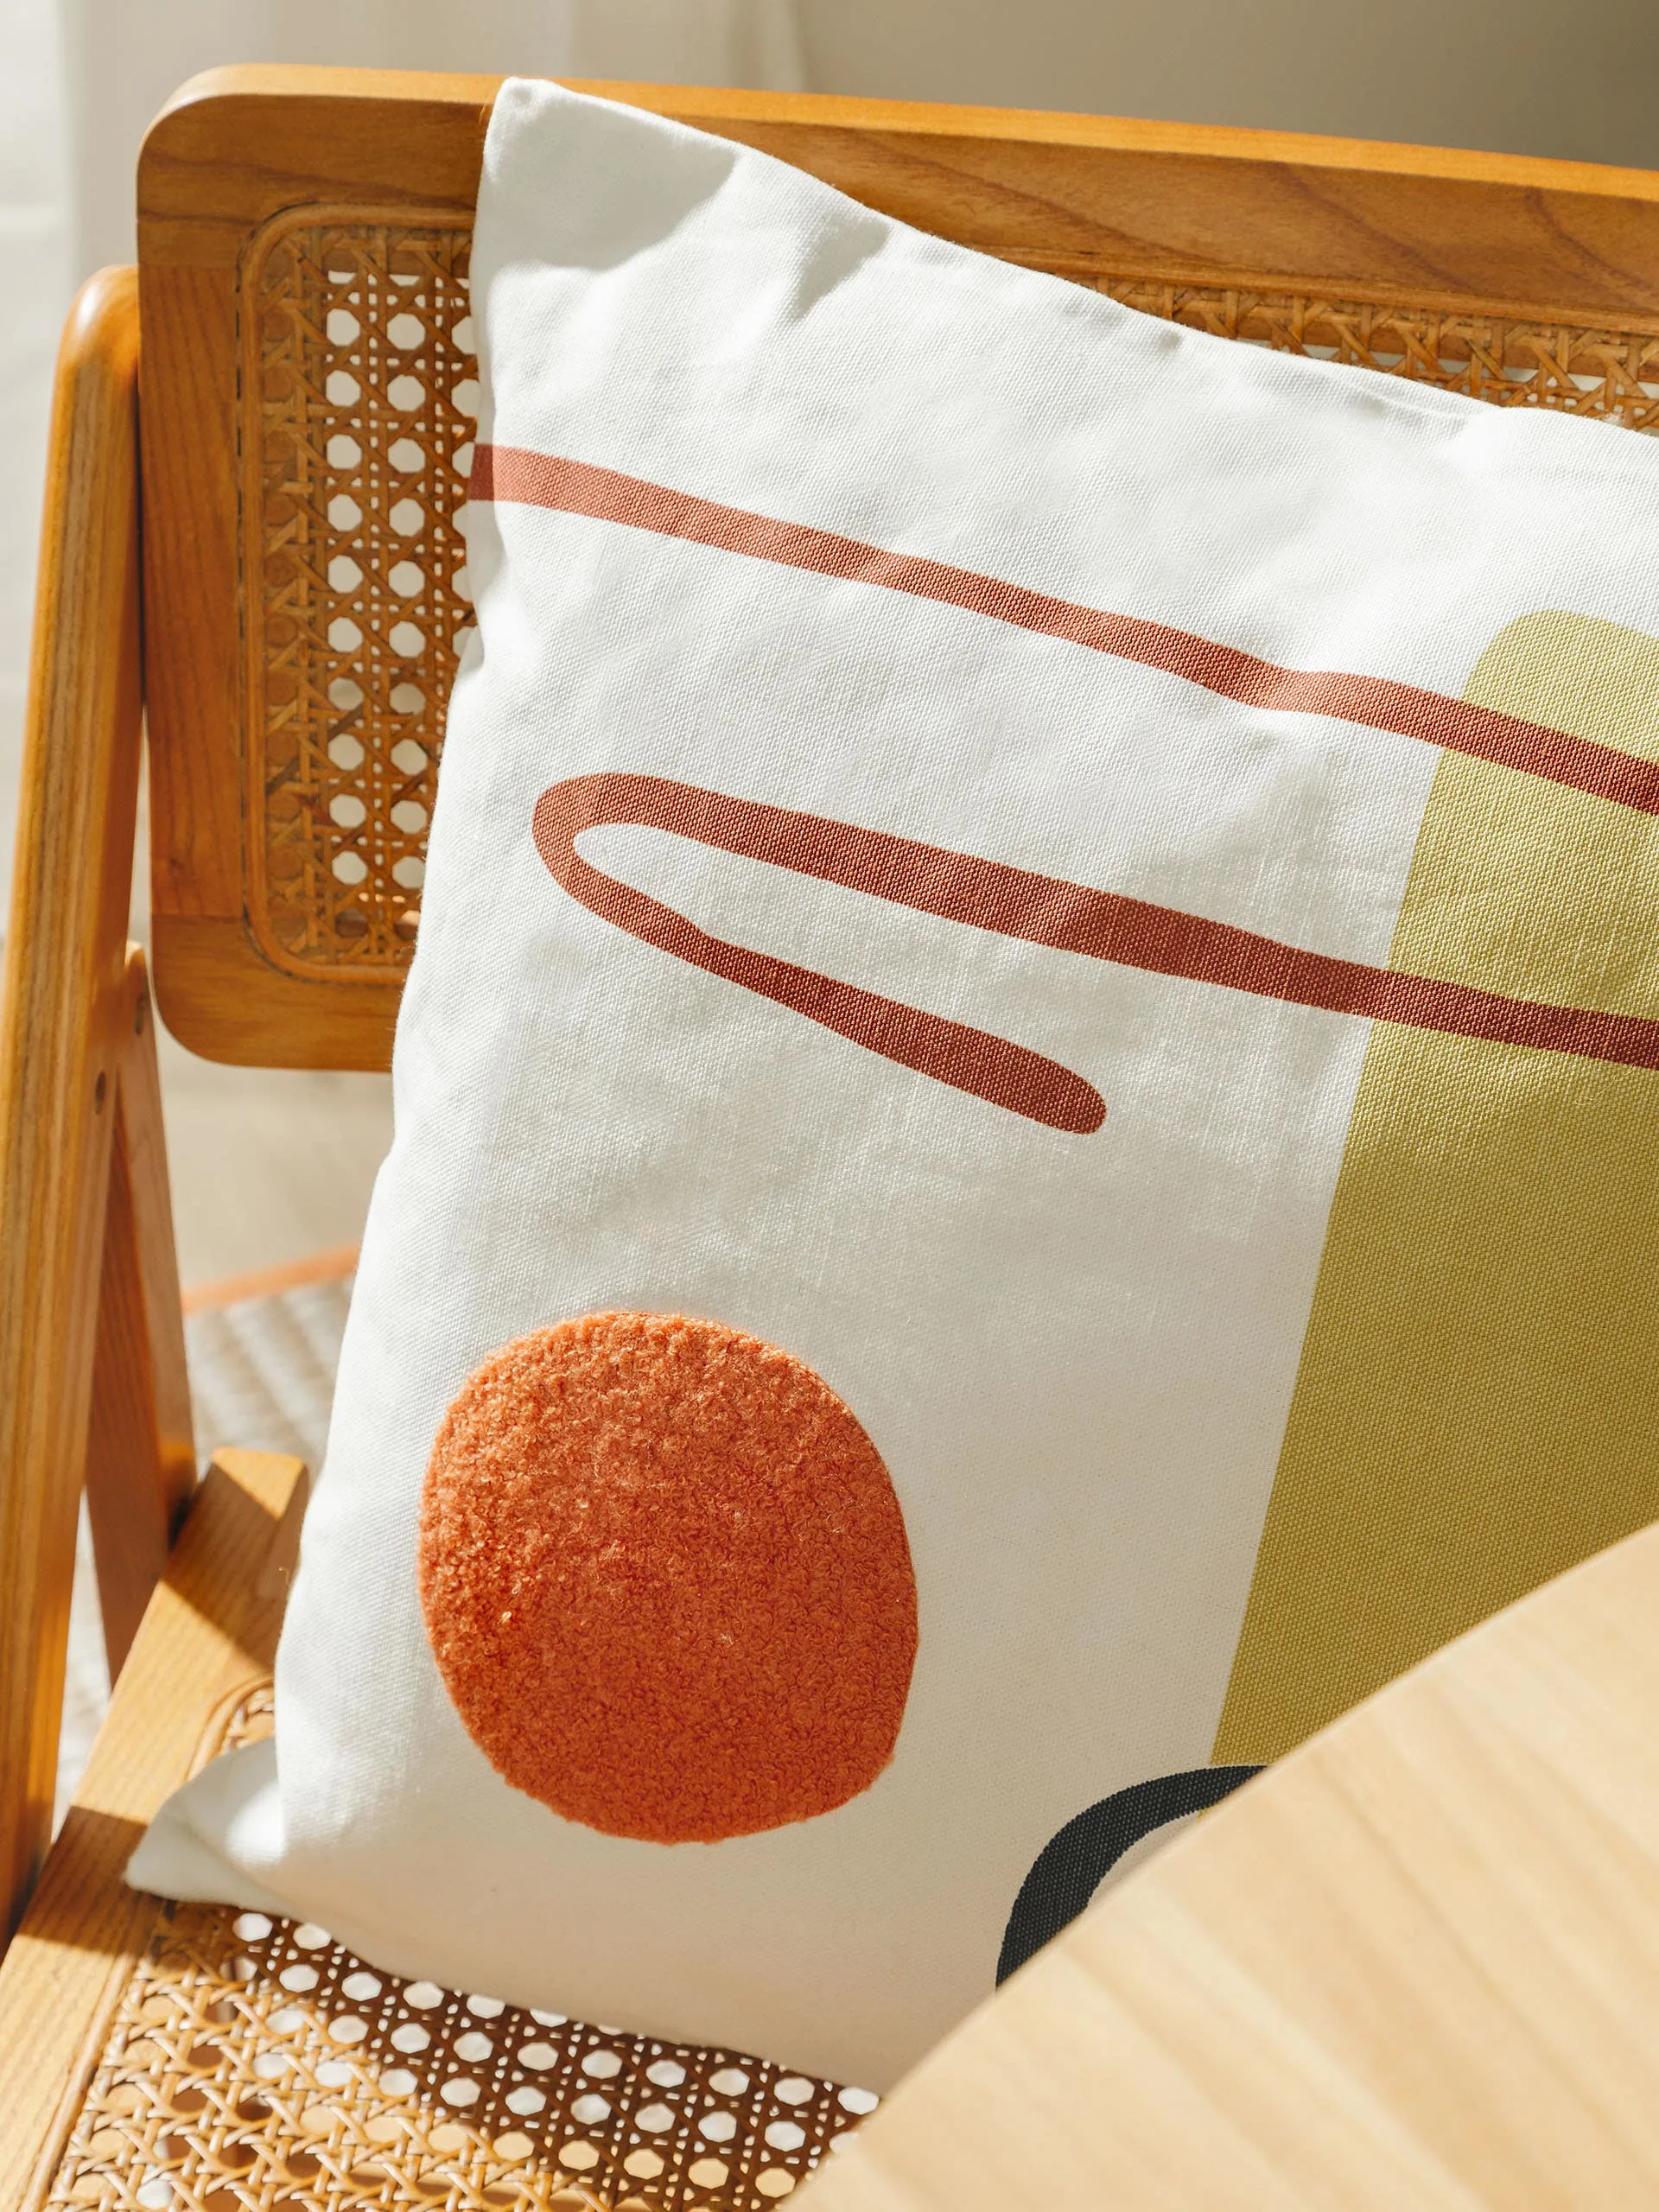 Detailaufnahme von einem Kissen mit bunten geometrischen Muster auf einem braunen Rattanstuhl